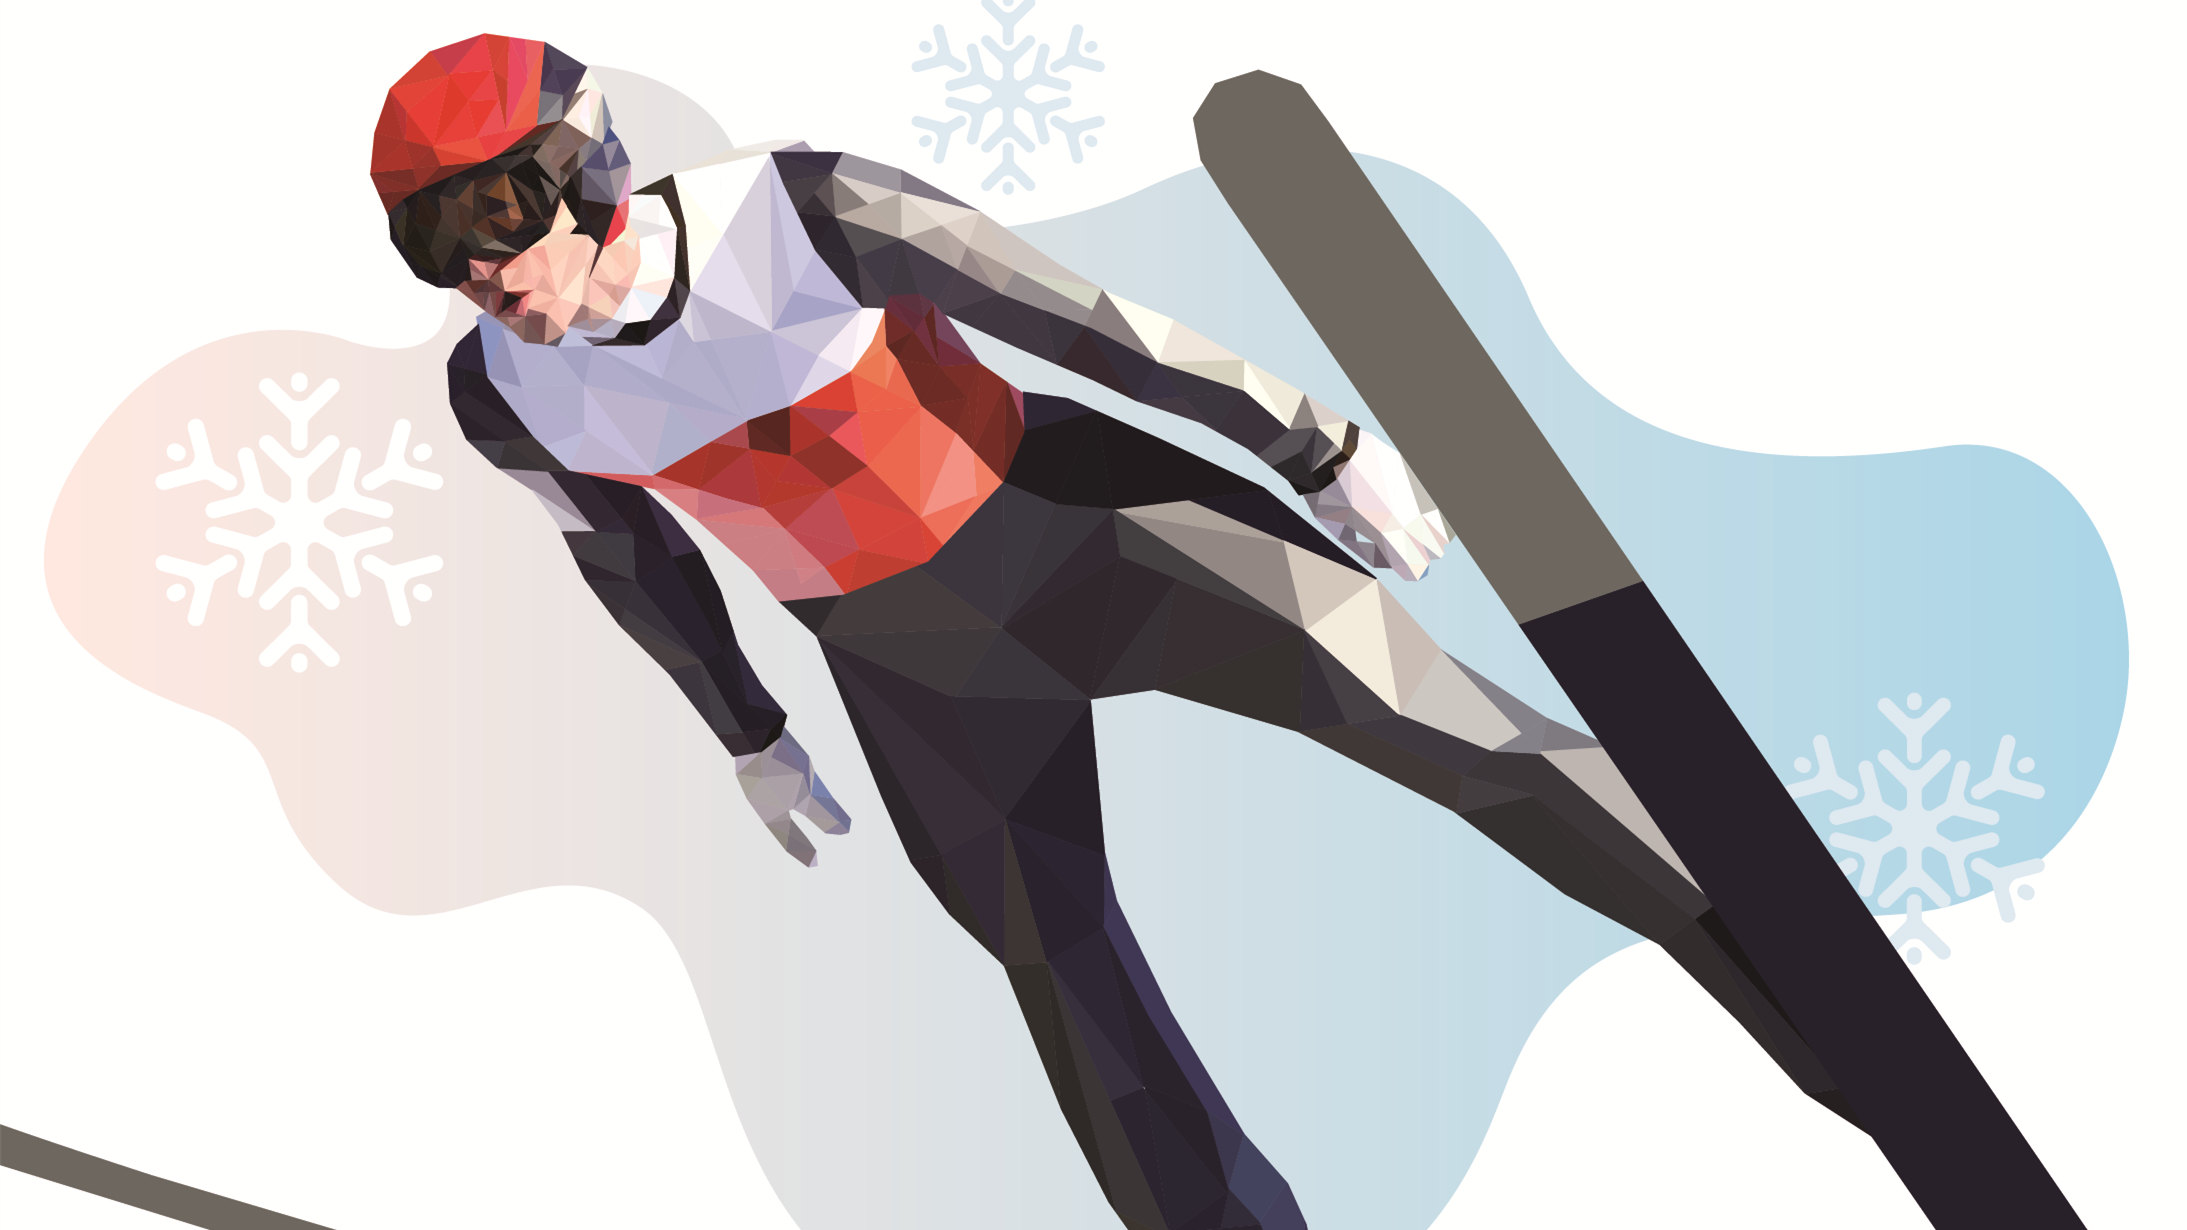 图解北京冬奥项目⑪|“跳台滑雪”——高台跃下，凌空旋转